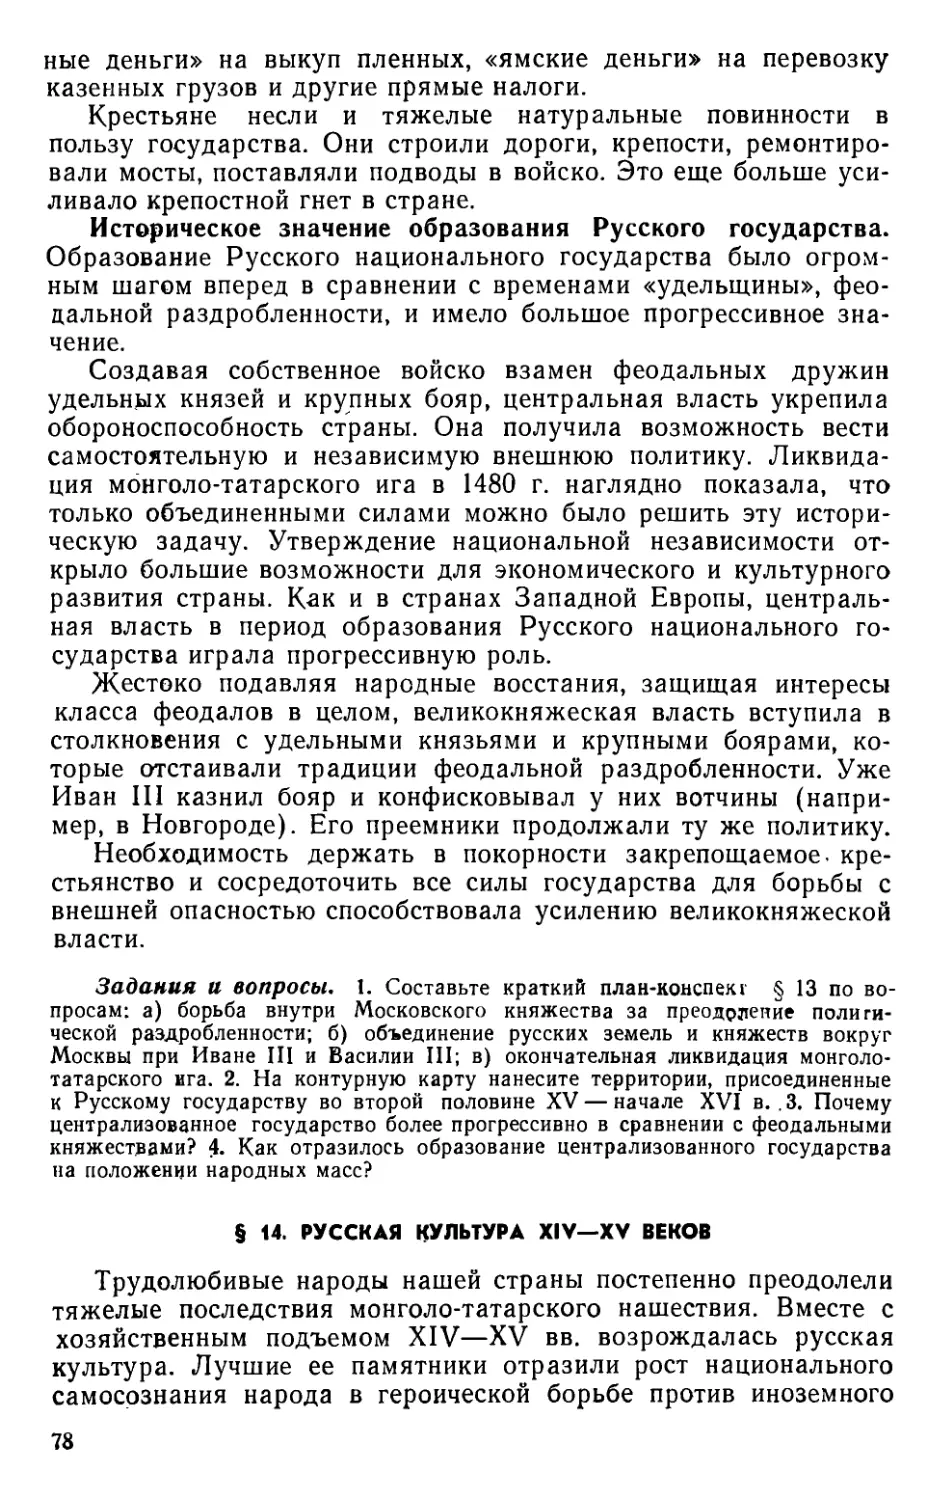 § 14. Русская культура XIV—XV веков